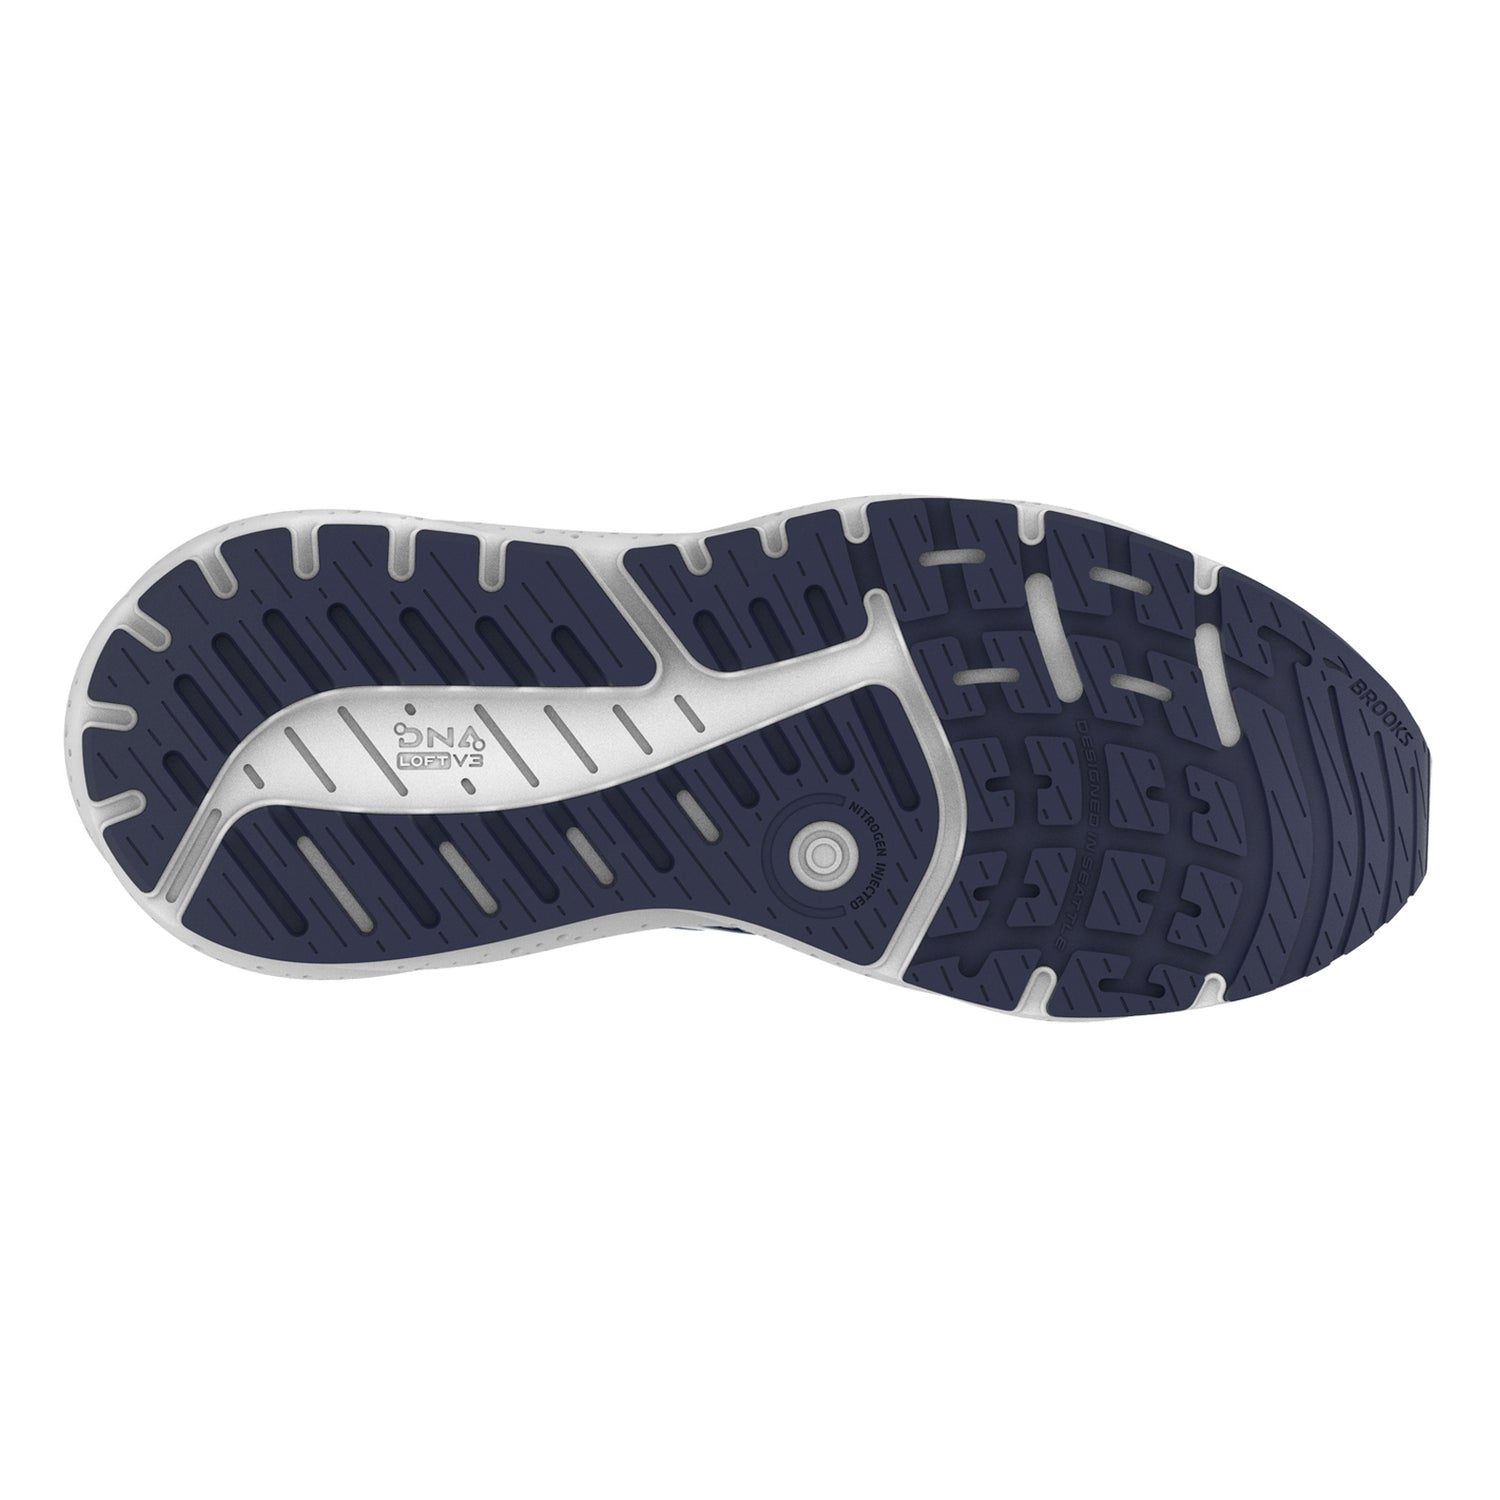 Peltz Shoes  Men's Brooks Beast GTS 23 Running Shoe - Wide Width Navy/Blue/White 110401 2E 495